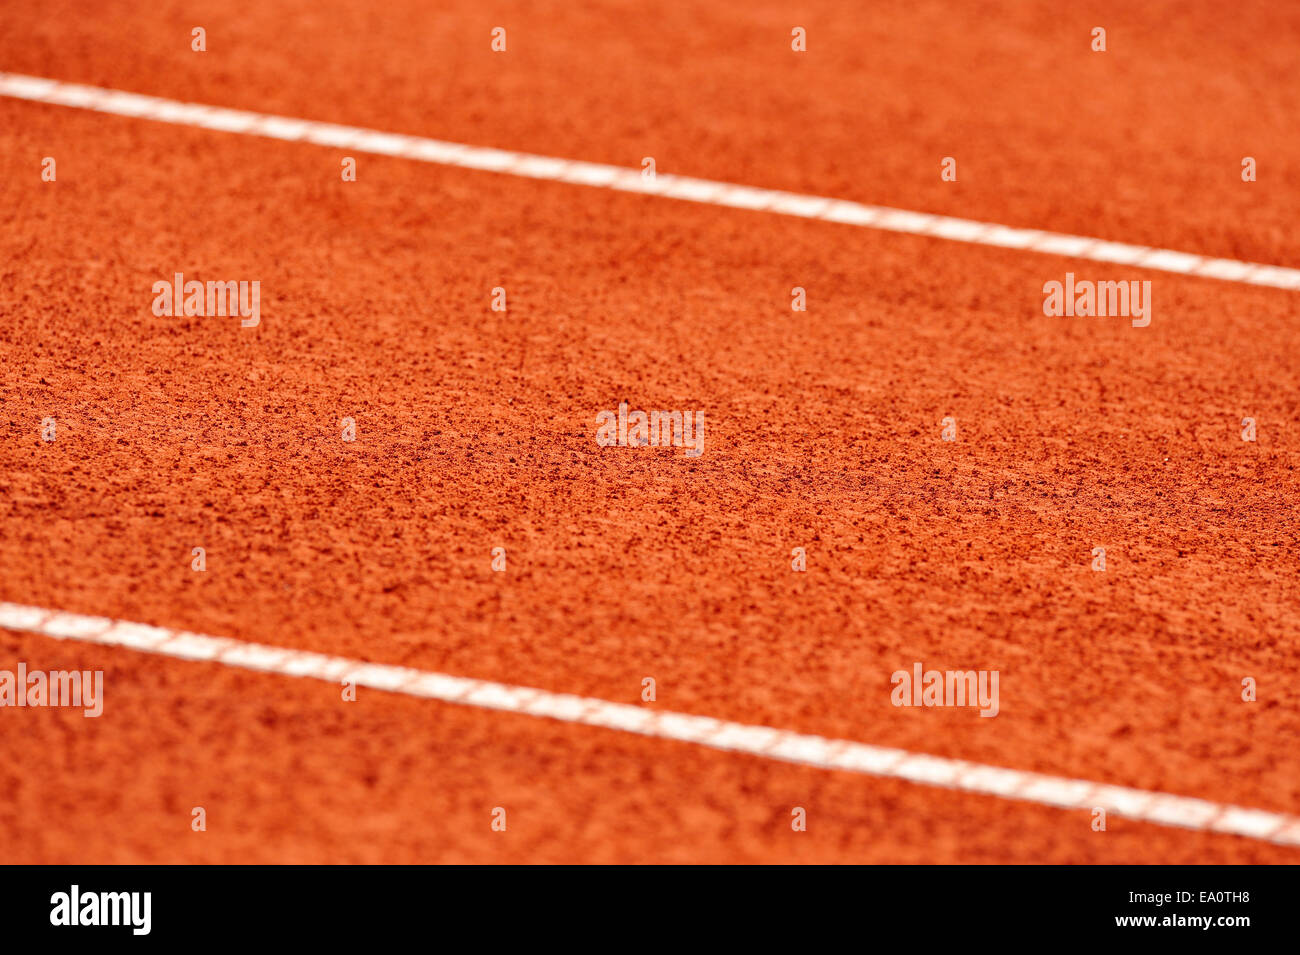 Détail avec marge sur un cour de tennis en terre battue humide Banque D'Images